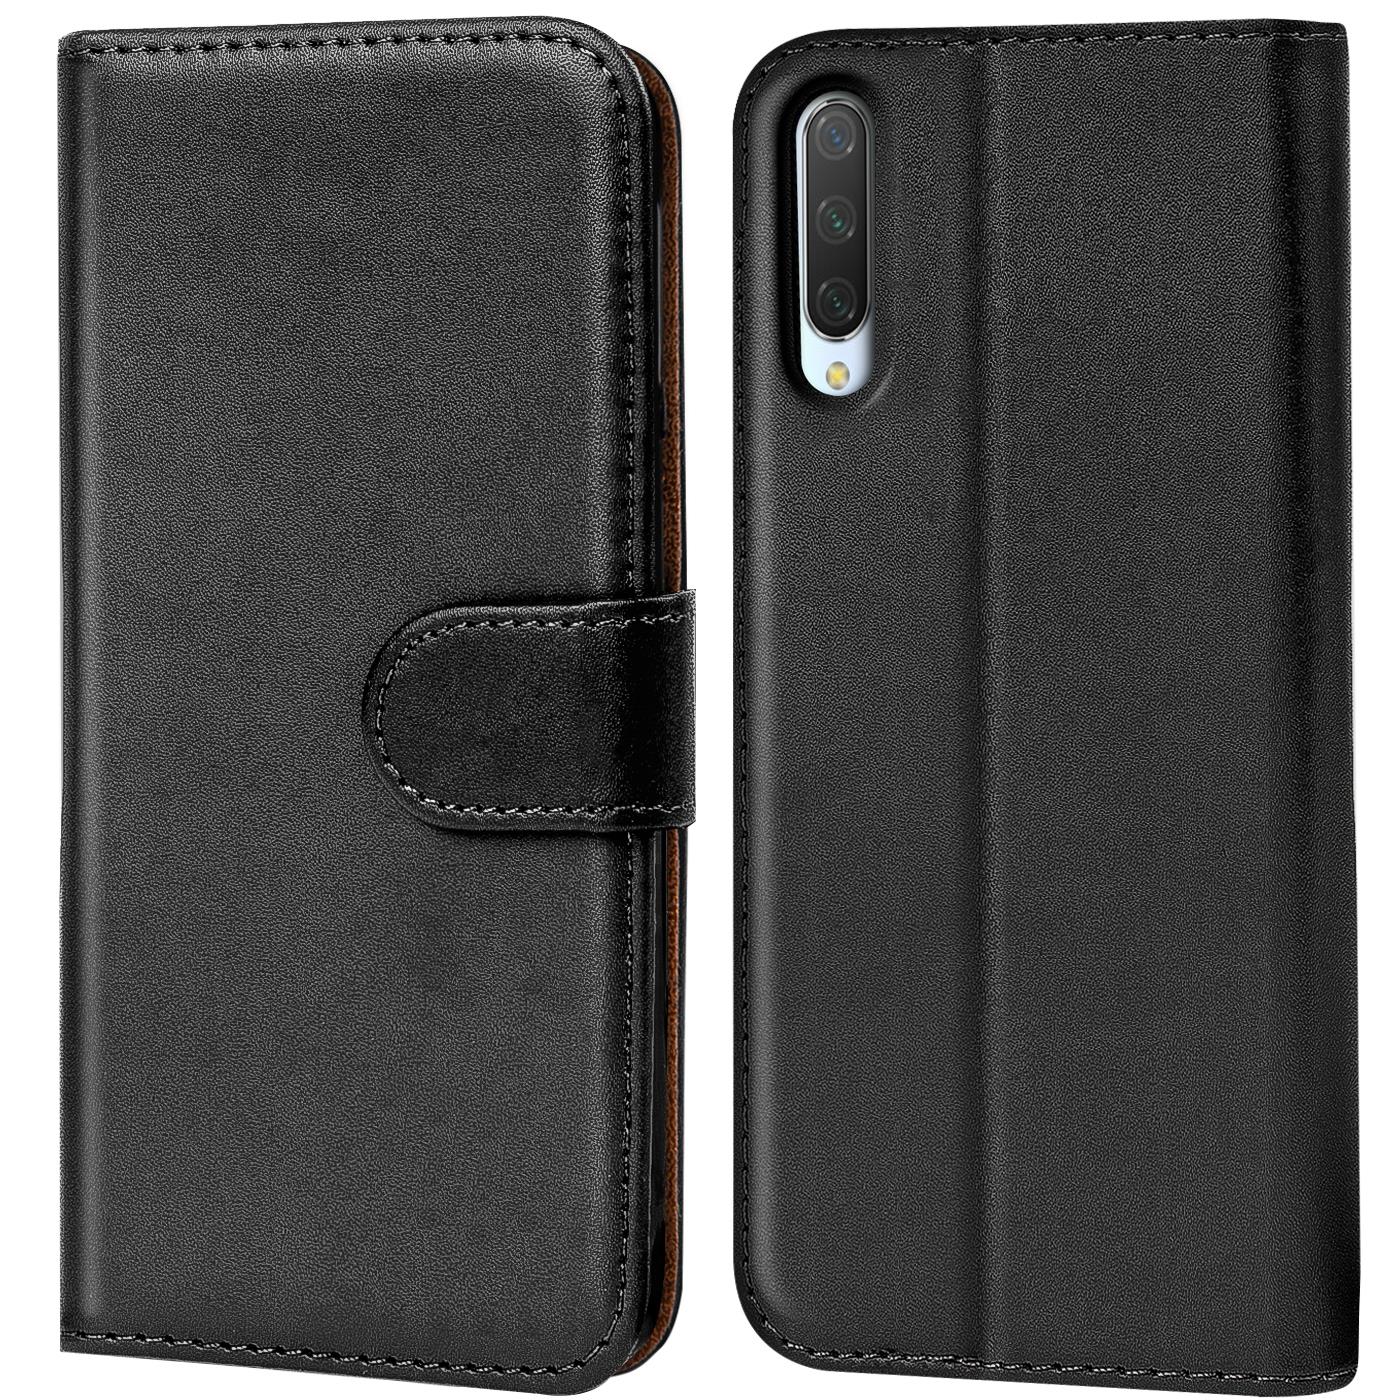 Indexbild 17 - Schutz Hülle Für Xiaomi Mi Handy Tasche Flip Case Cover Wallet Book Hülle Etui